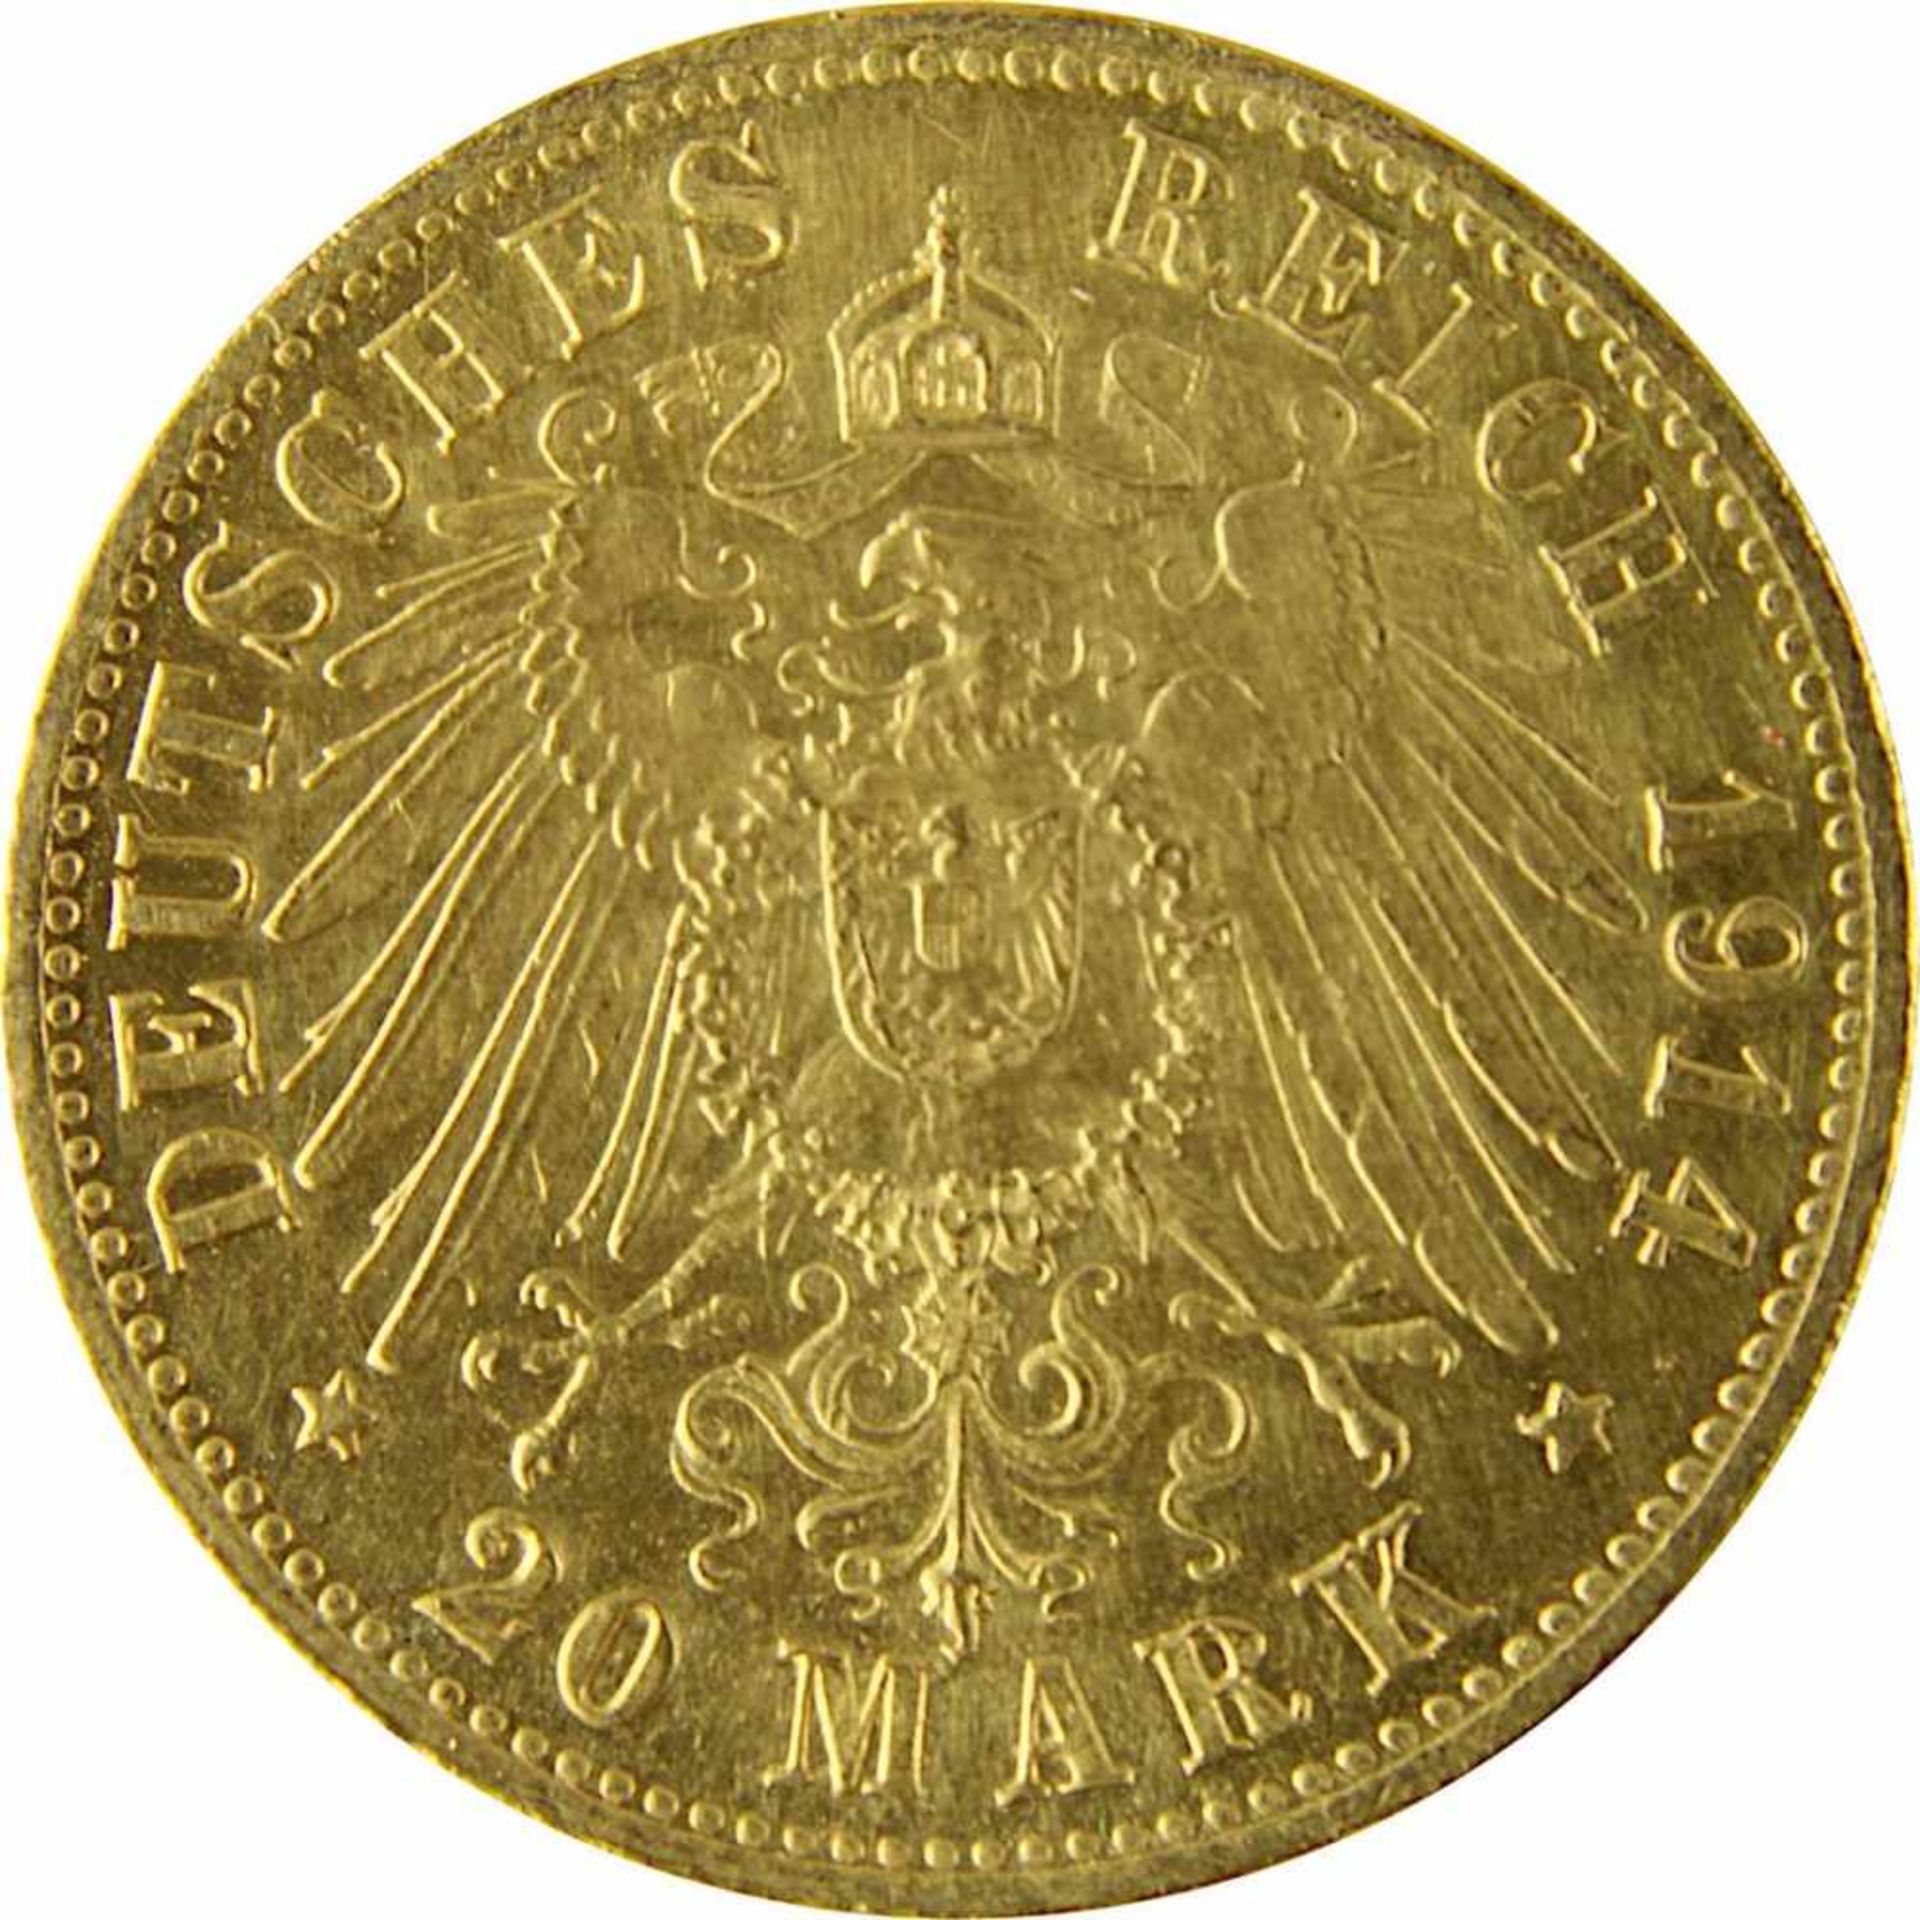 zurückgezogen / withdrawn---20 Mark Goldmünze Deutsches Reich, Bayern 1914, 900er Gold, VS Ludwig - Bild 3 aus 3